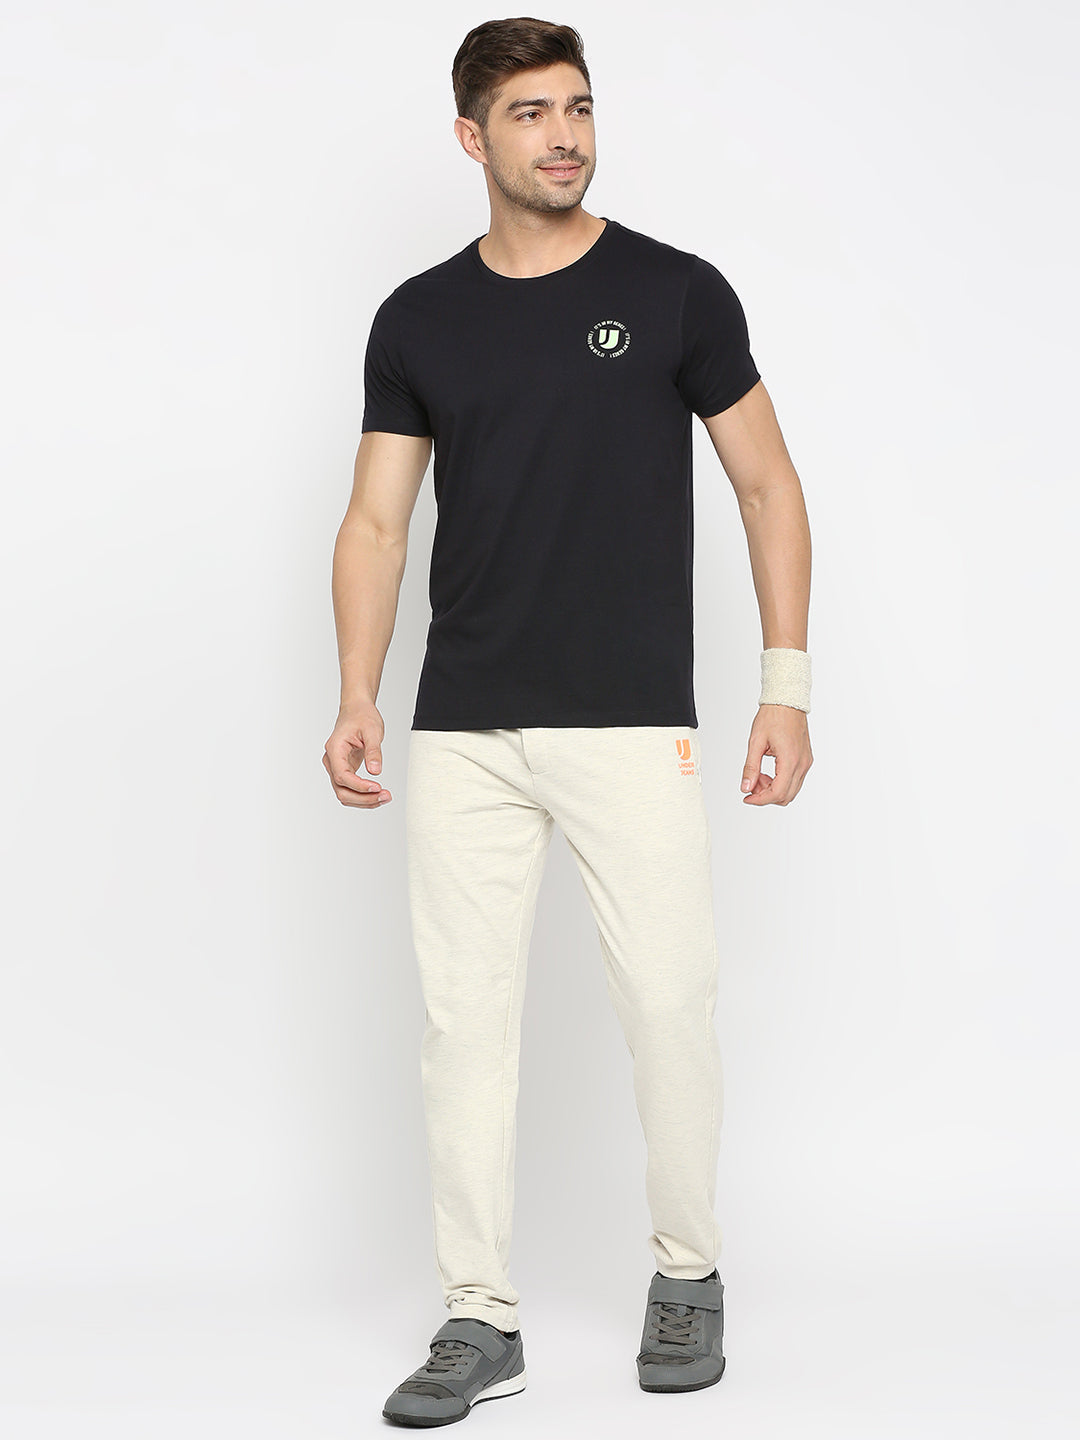 Men Premium Navy Cotton Round Neck Plain Tshirt- UnderJeans by Spykar